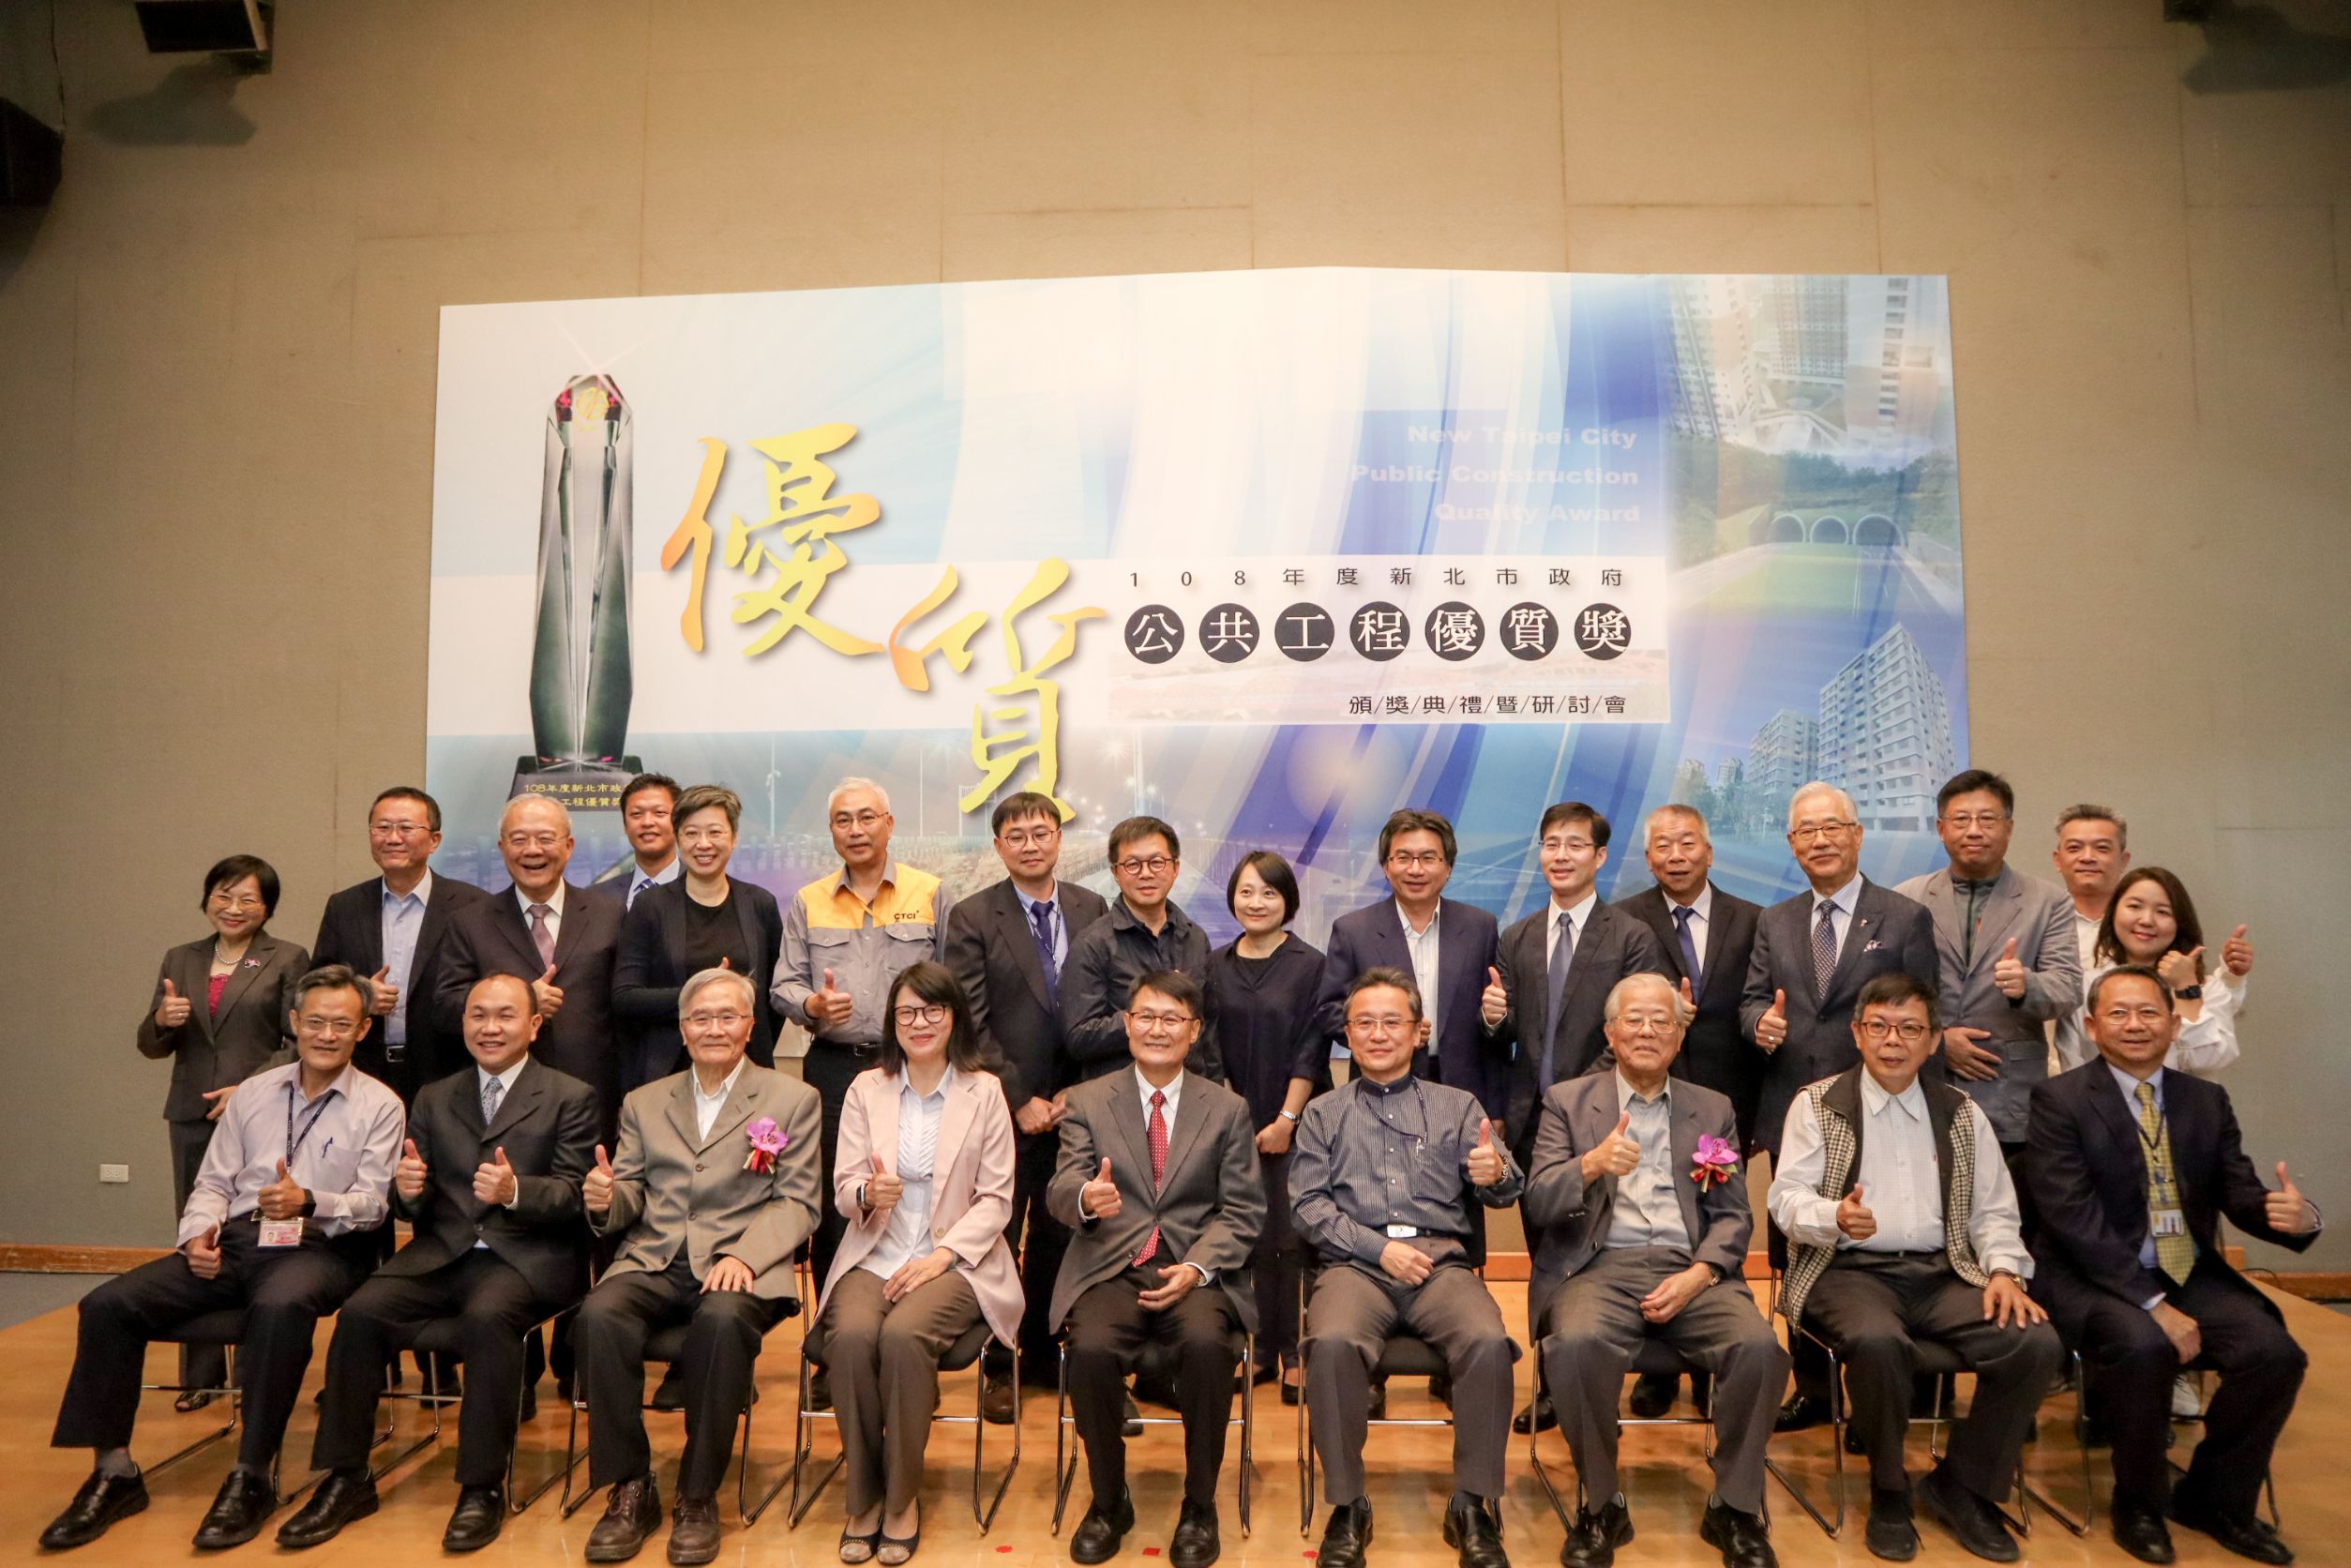 108年度公共工程優質獎13日舉行頒獎，新北市副市長陳純敬(中)與評審委員及獲獎代表合影